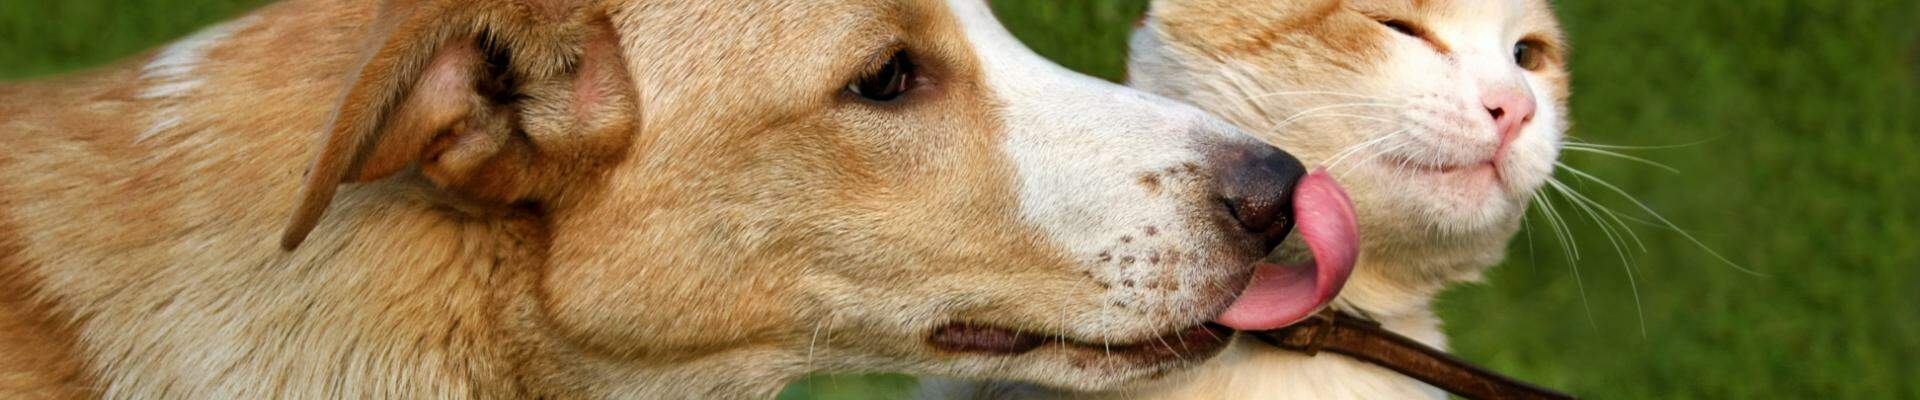 Un perro marrón y blanco le da un beso a un gato reticente